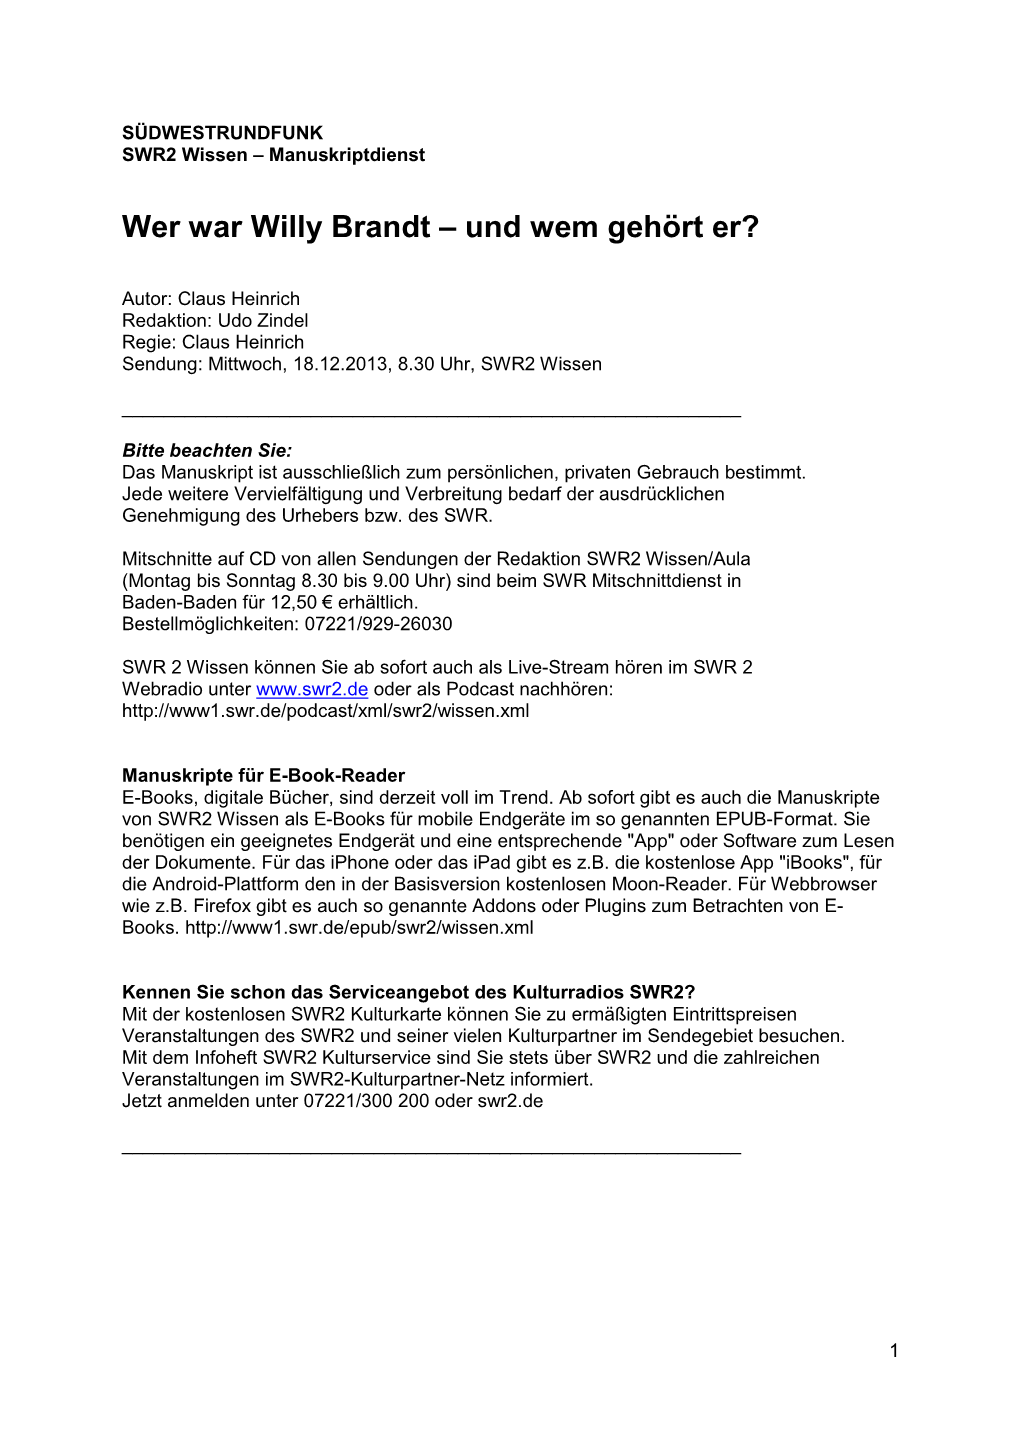 Wer War Willy Brandt – Und Wem Gehört Er?